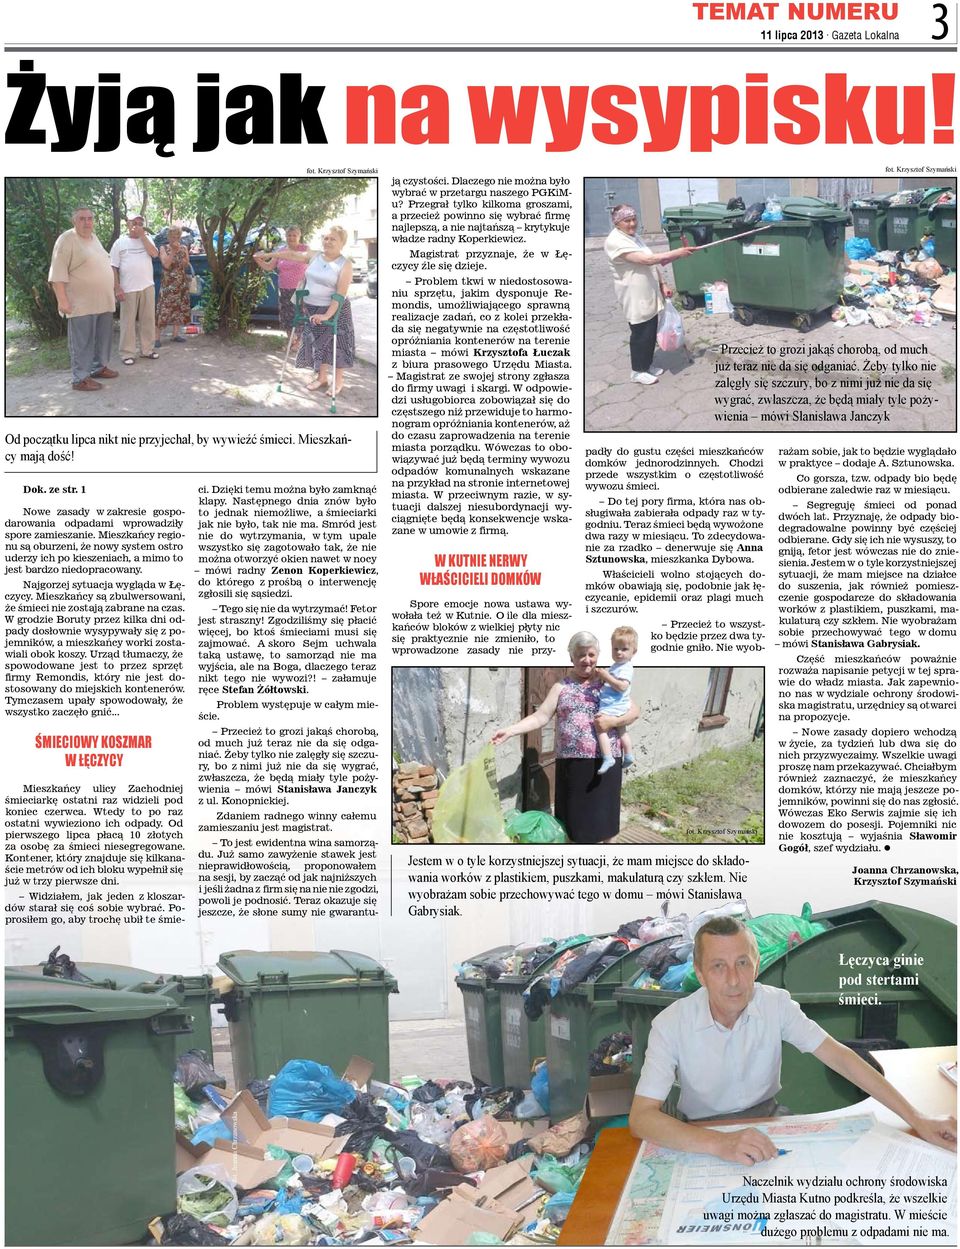 Najgorzej sytuacja wygląda w Łęczycy. Mieszkańcy są zbulwersowani, że śmieci nie zostają zabrane na czas.